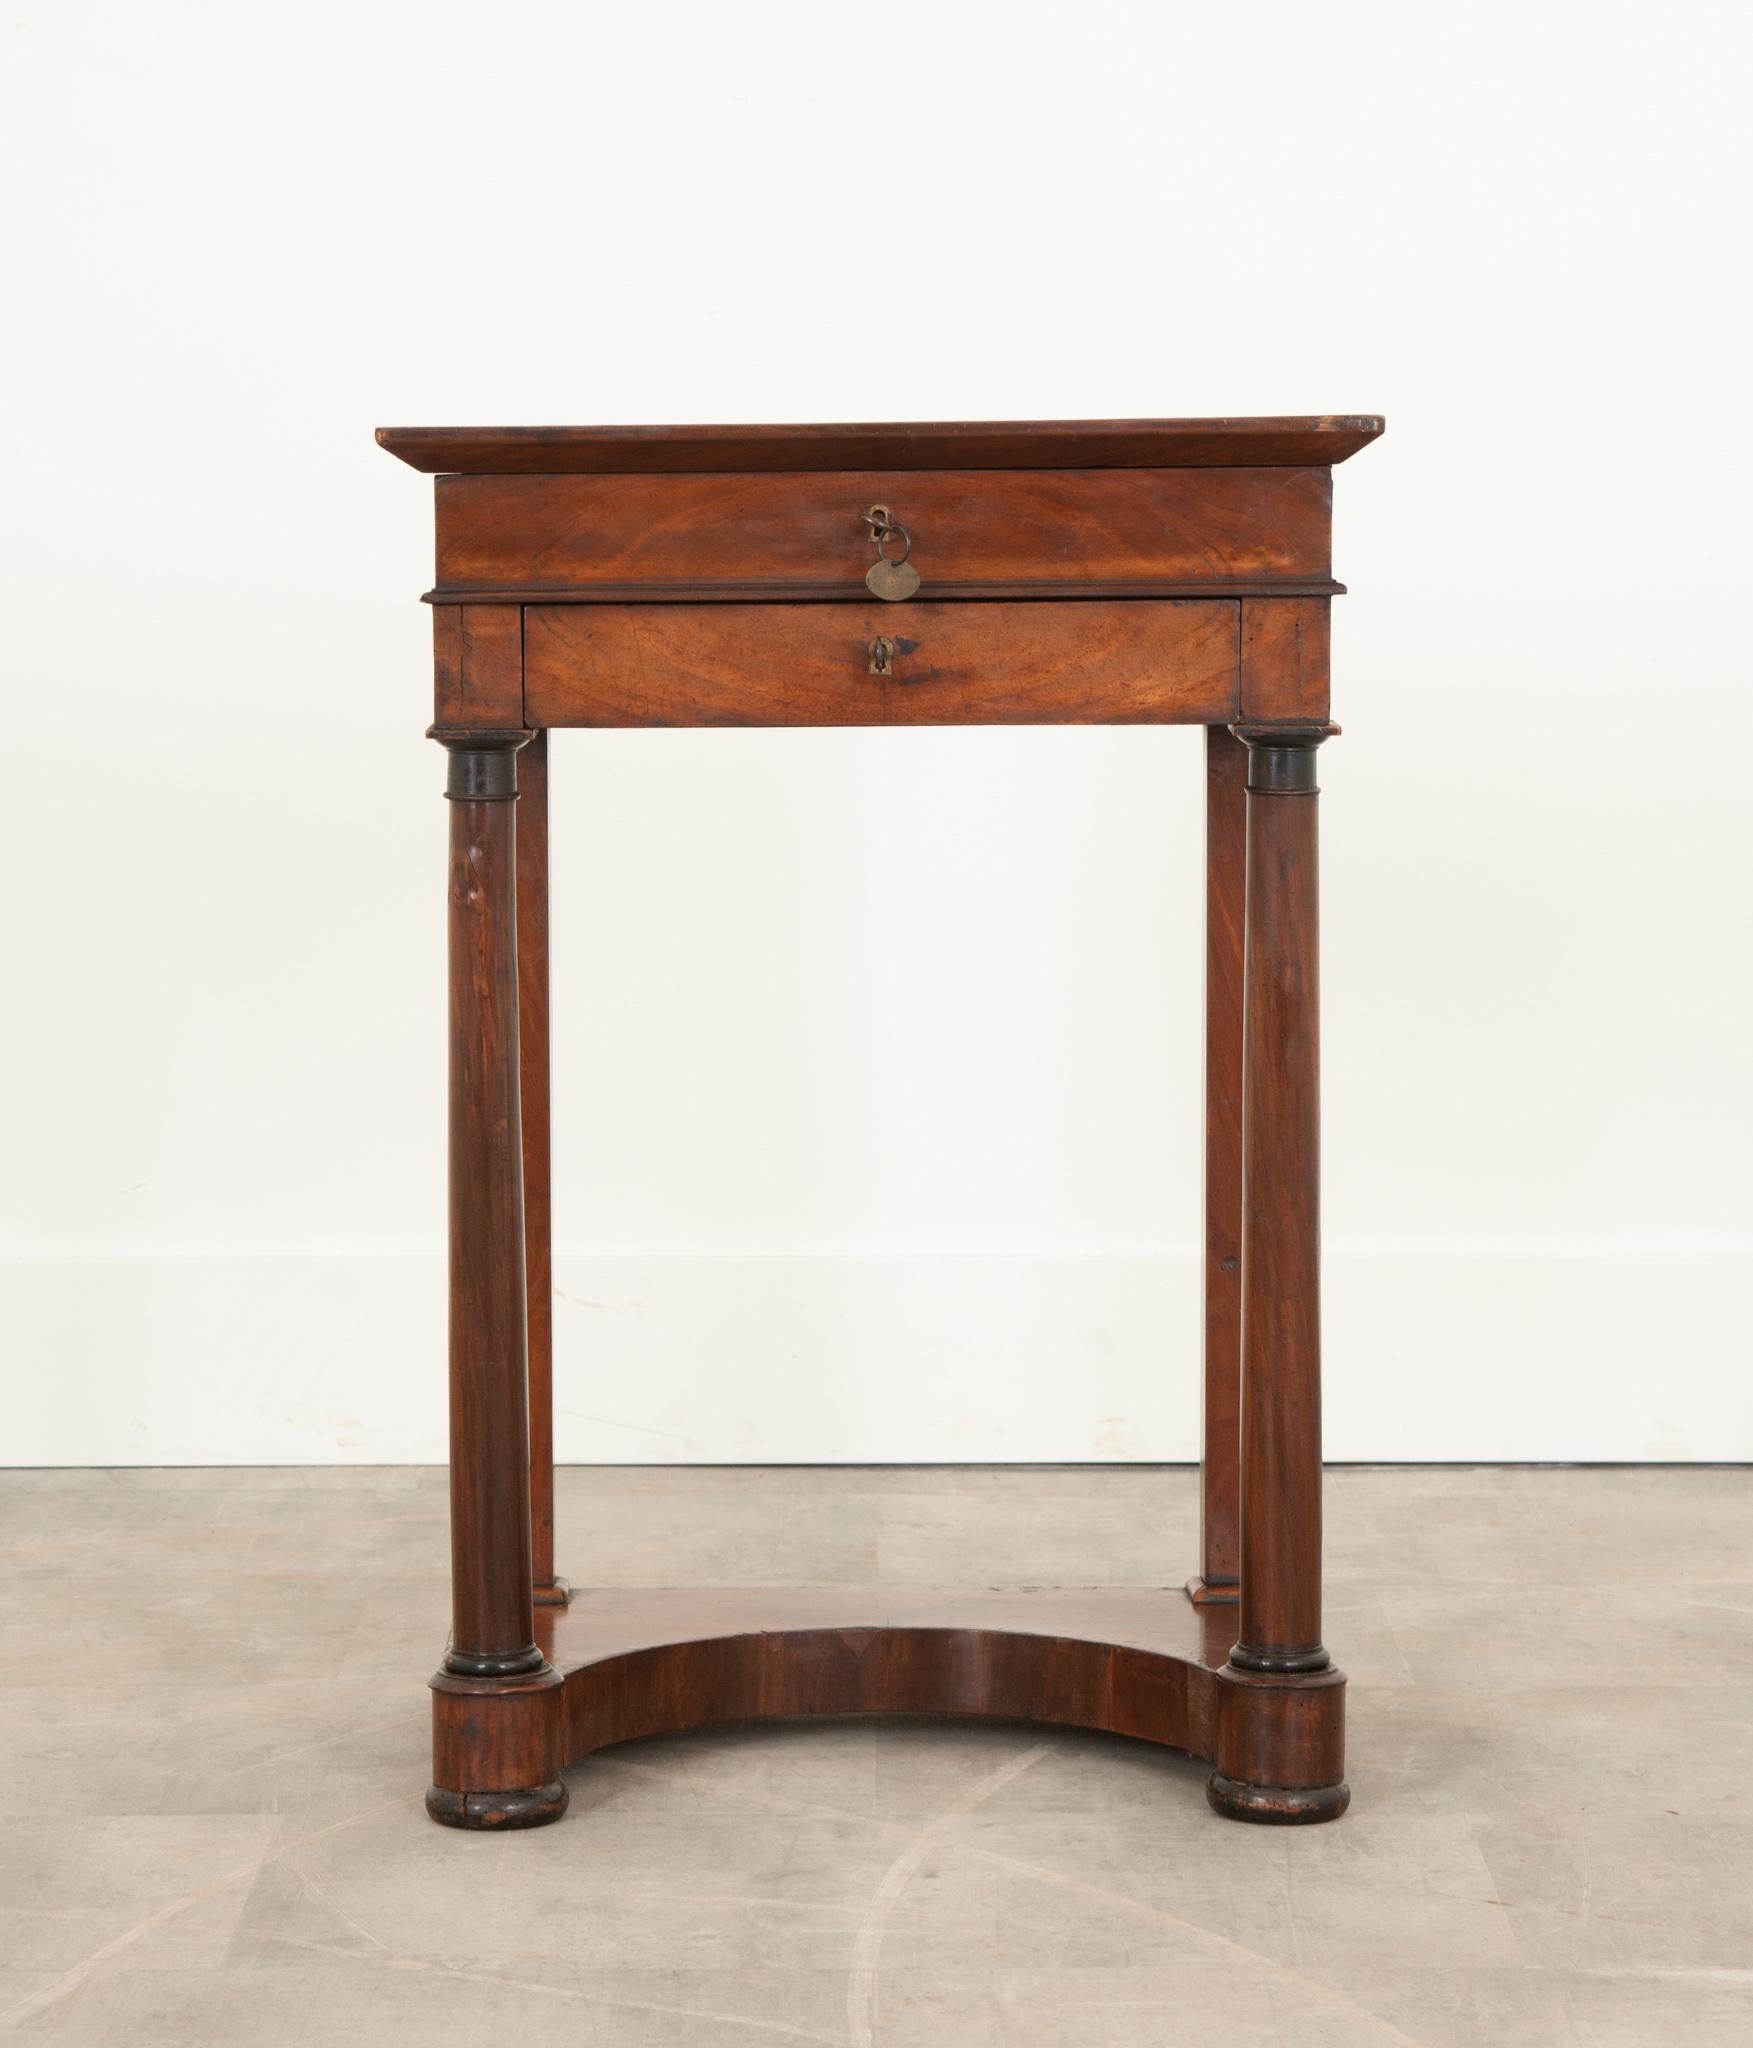 Cette petite table de travail du 19e siècle en France est pleine d'éléments charmants dans un design compact. Les détails font penser que cette pièce a servi de table de correspondance et de couture. En déverrouillant ce qui semble être un tiroir,